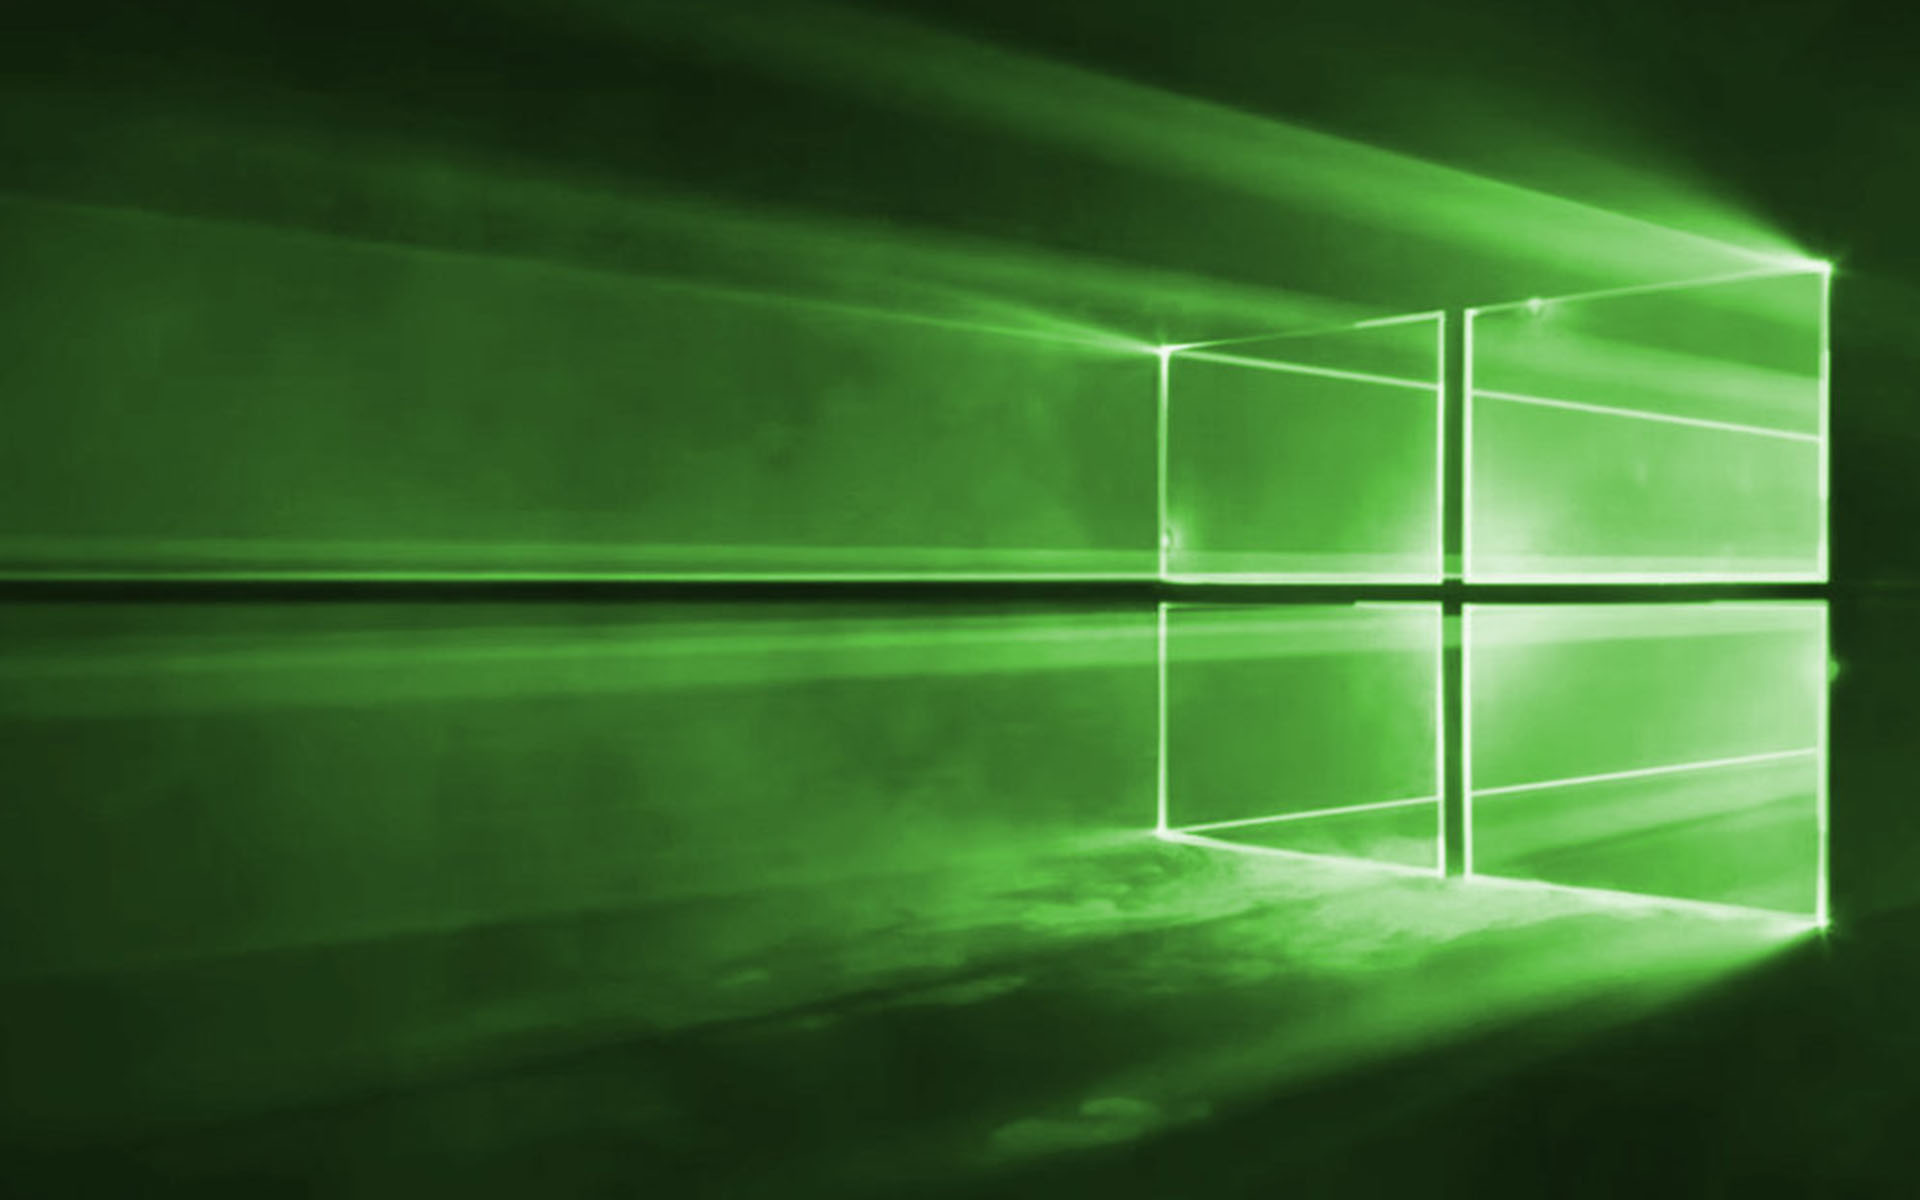 Hình nền Windows 10 màu xanh lá cây làm cho máy tính của bạn trở nên sáng tạo và sinh động. Hãy xem hình ảnh liên quan đến từ khóa Green Windows 10 Wallpaper để tìm kiếm những ý tưởng mới và thú vị cho hình nền của bạn.